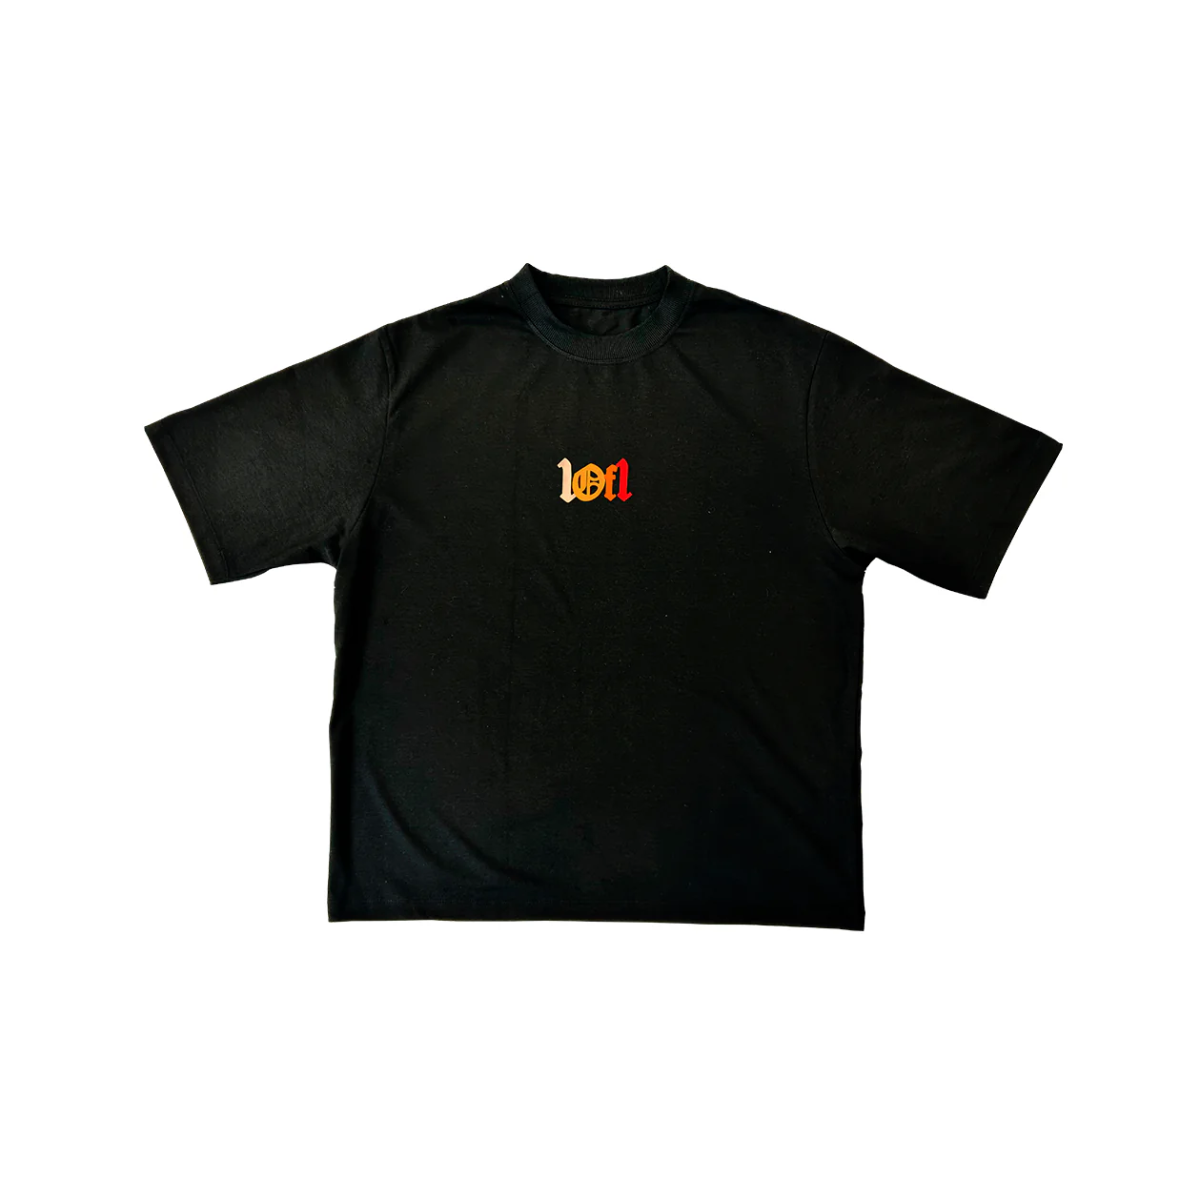 Exclusivist 1of1 - Camiseta 'OG 2.0' Black